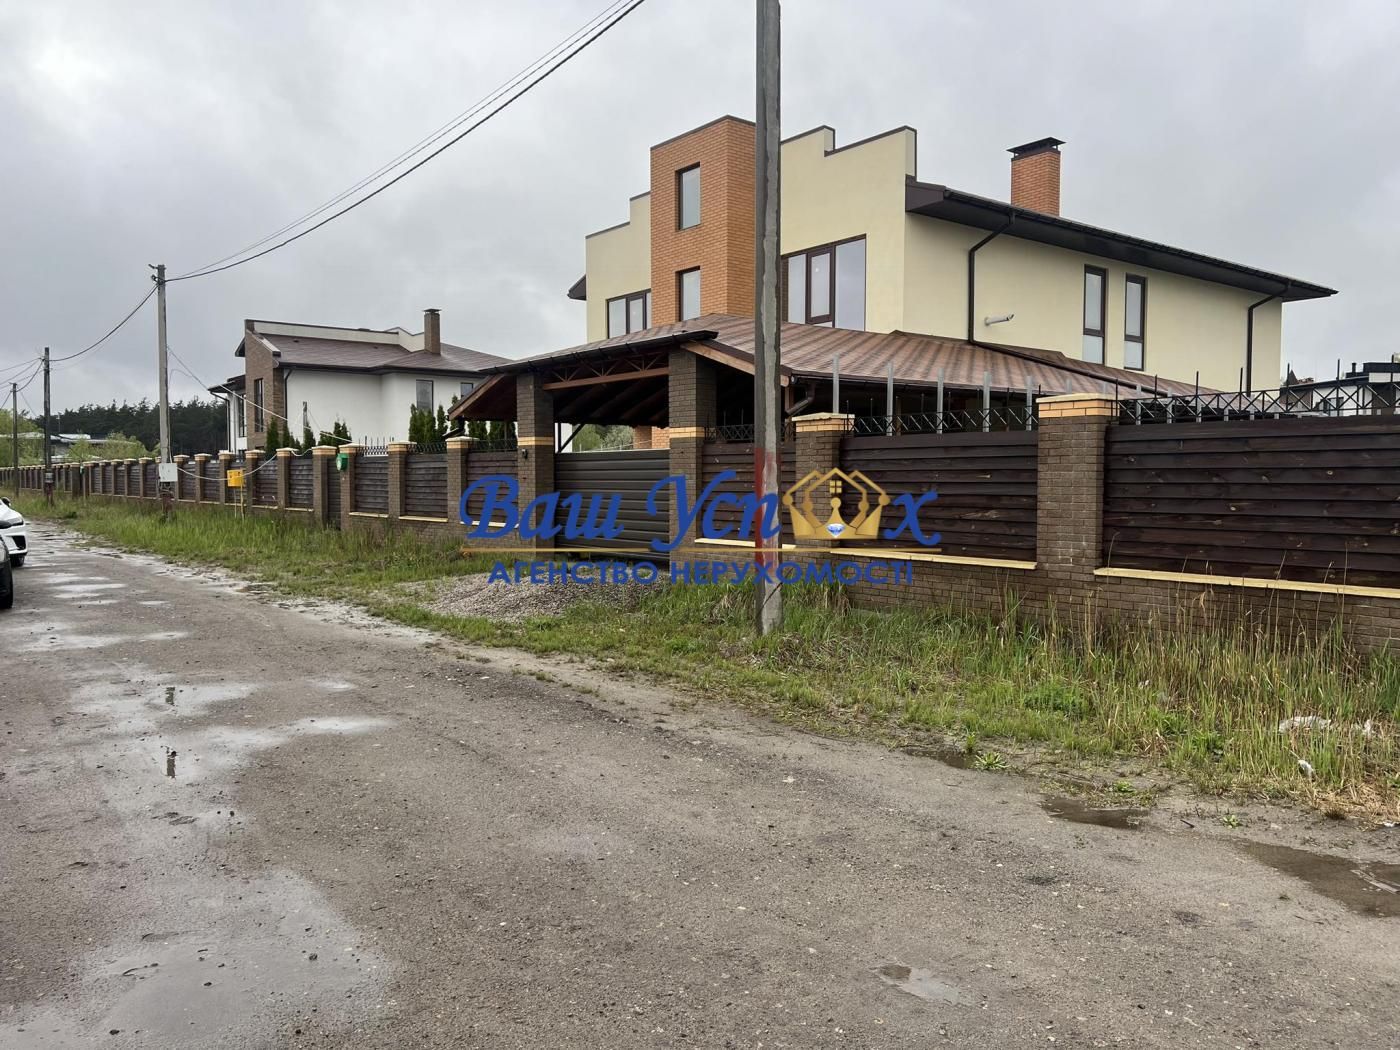 Продажа нового дома в городке село Лесники. Ясный Хутор